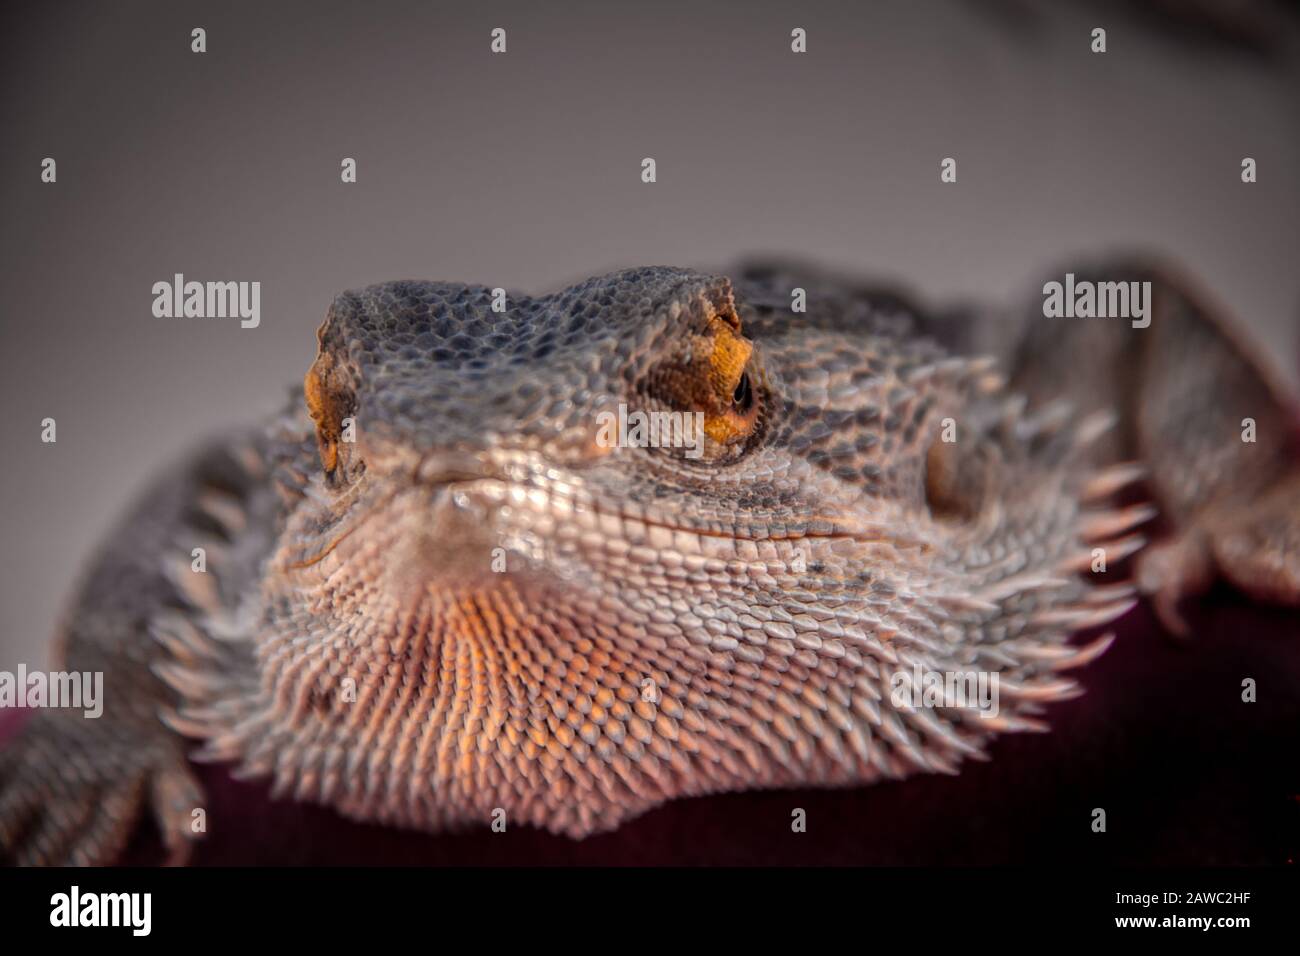 Primo piano di un drago con barba (pogona vitticeps), un rettile che vive in Australia ed è un adorabile animale domestico Foto Stock